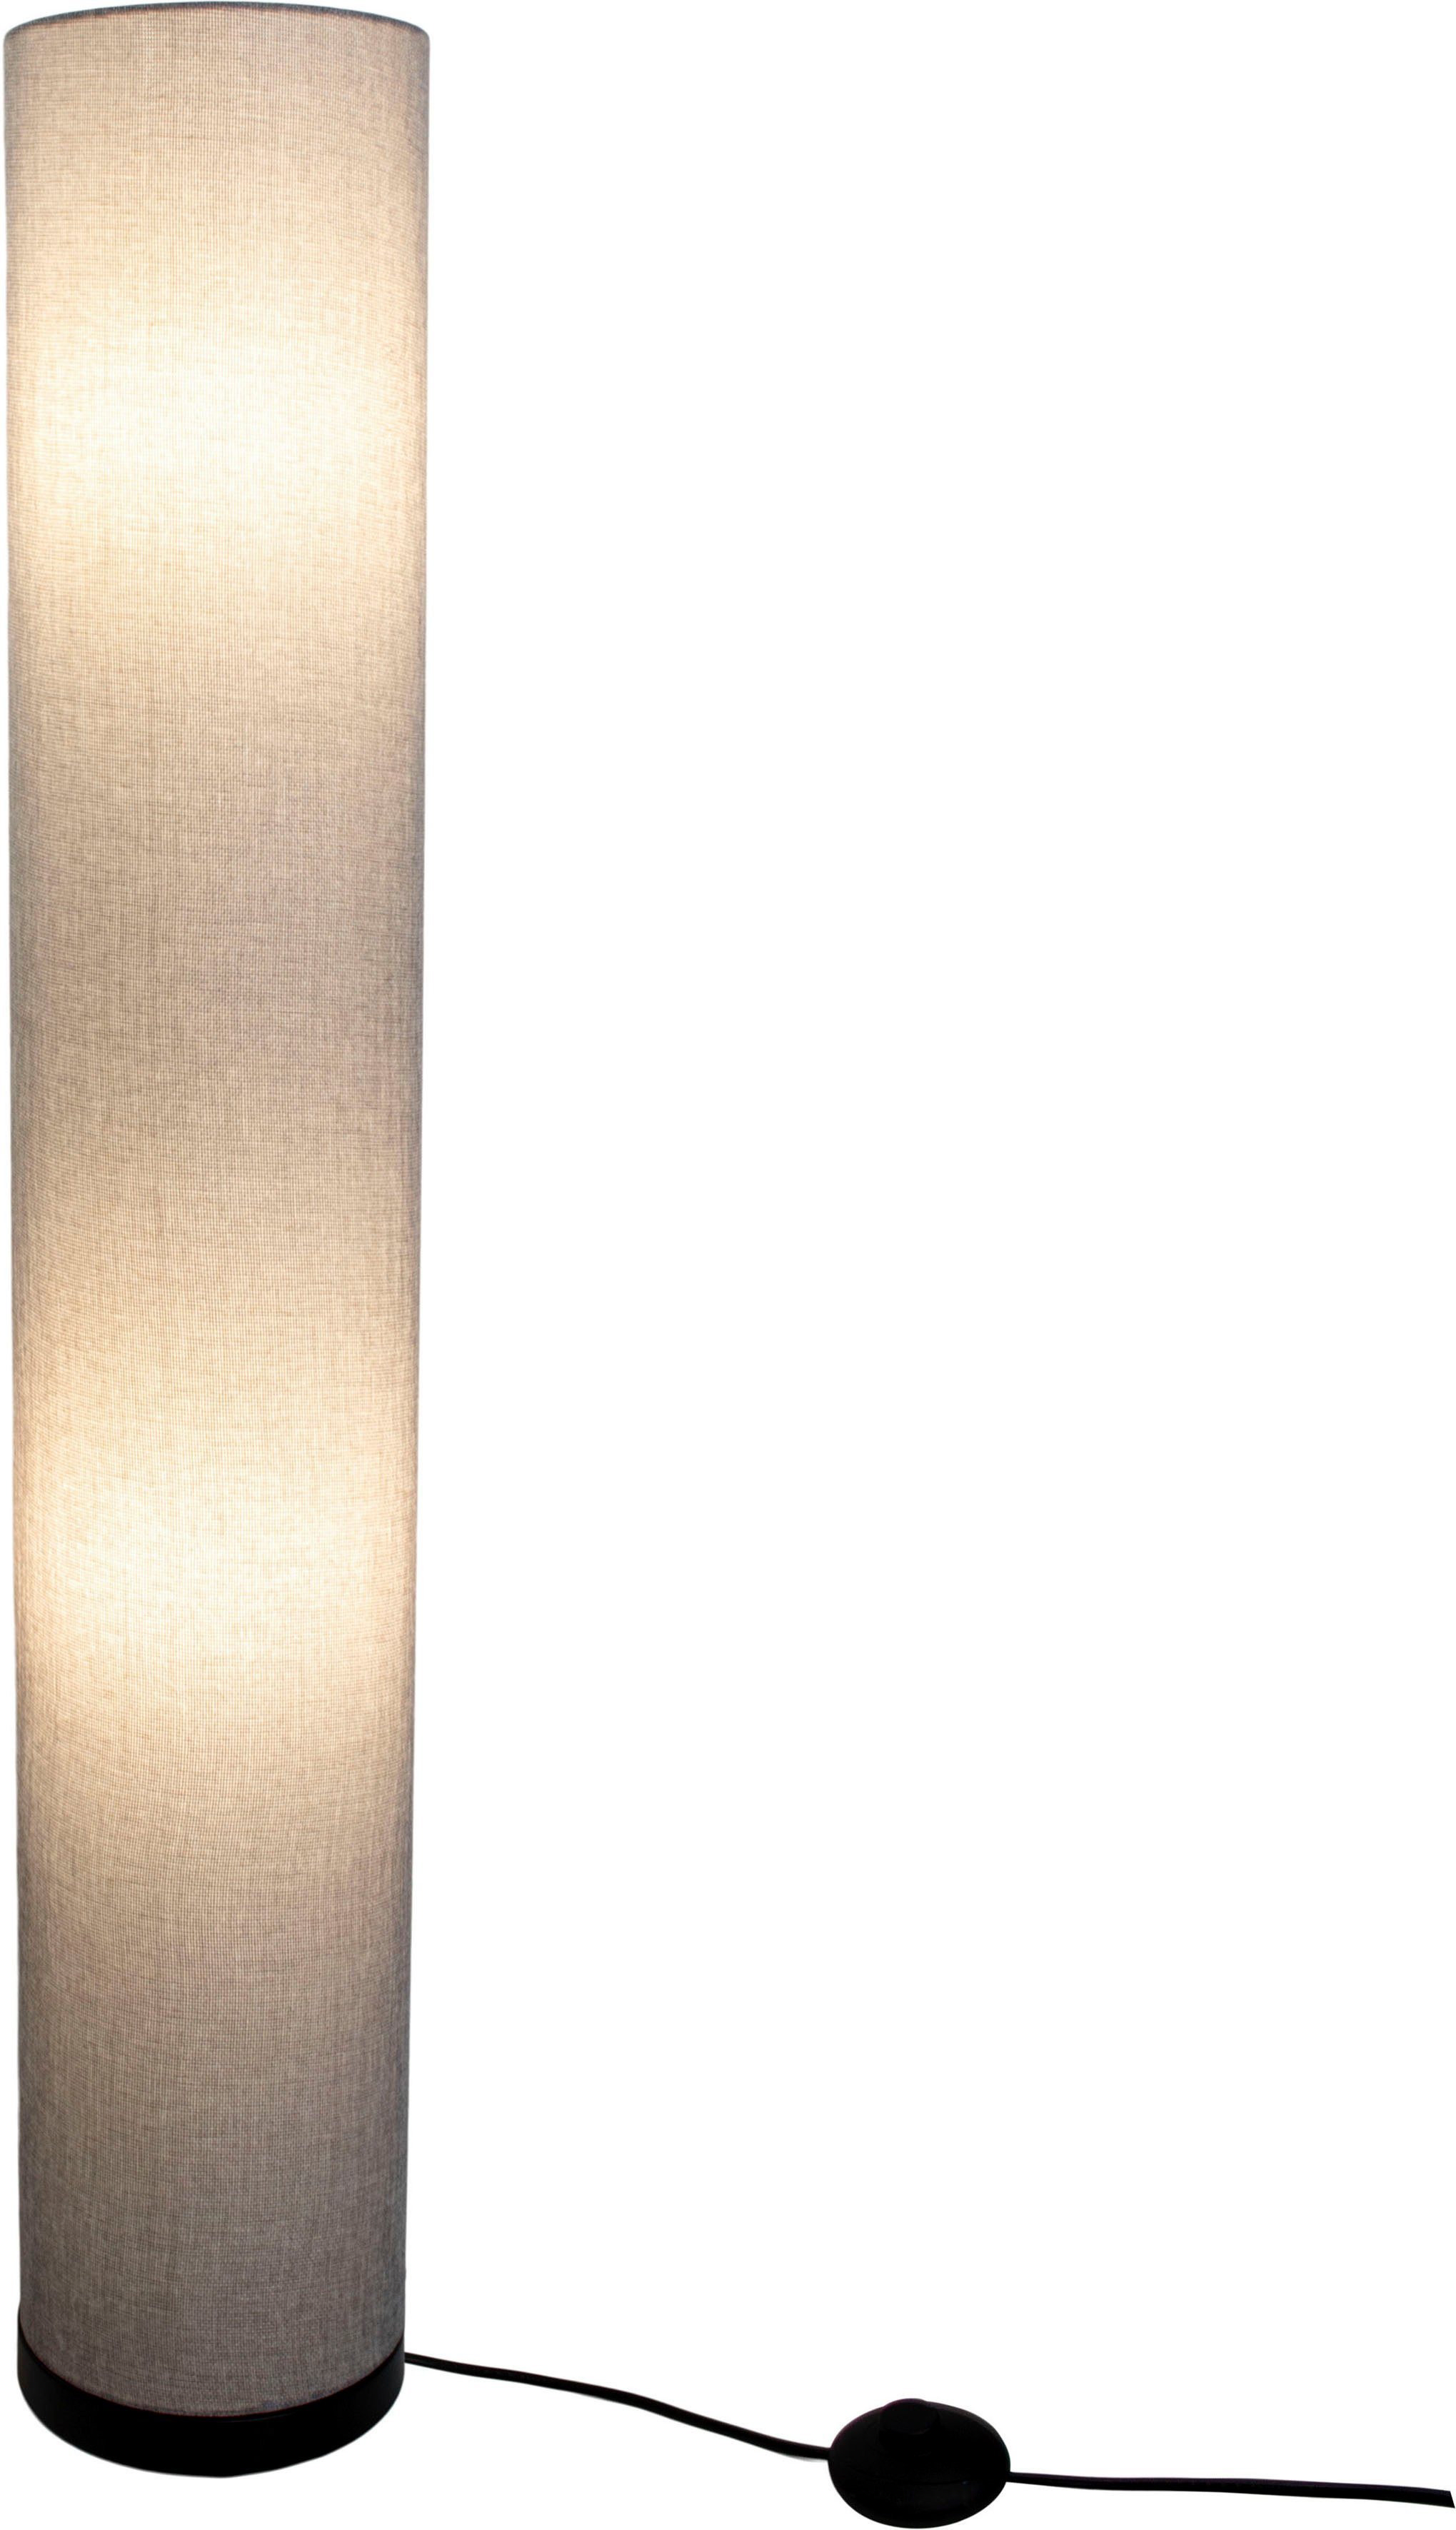 näve Stehlampe Beate, E27 max. 40W, Metall/Textil, 110cm, Leuchtmittel, grau exkl. Farbe: Ein-/Ausschalter, Höhe: ohne 3x